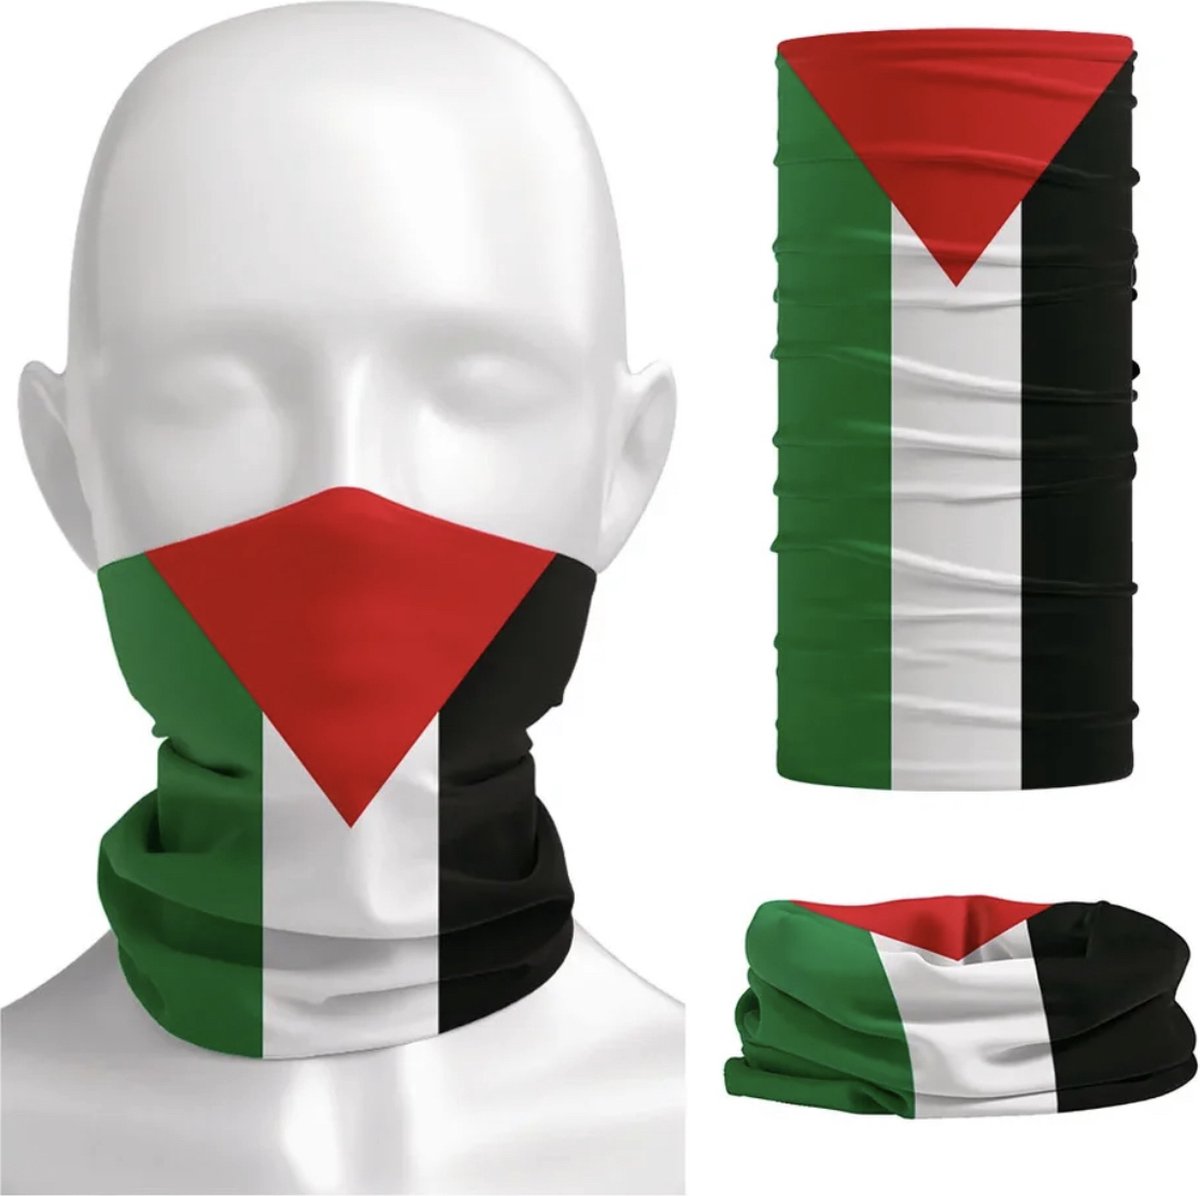 Drapeau palestinien 90x150 cm + Kufiya aux couleurs palestiniennes  Rouge/Vert/ Wit/